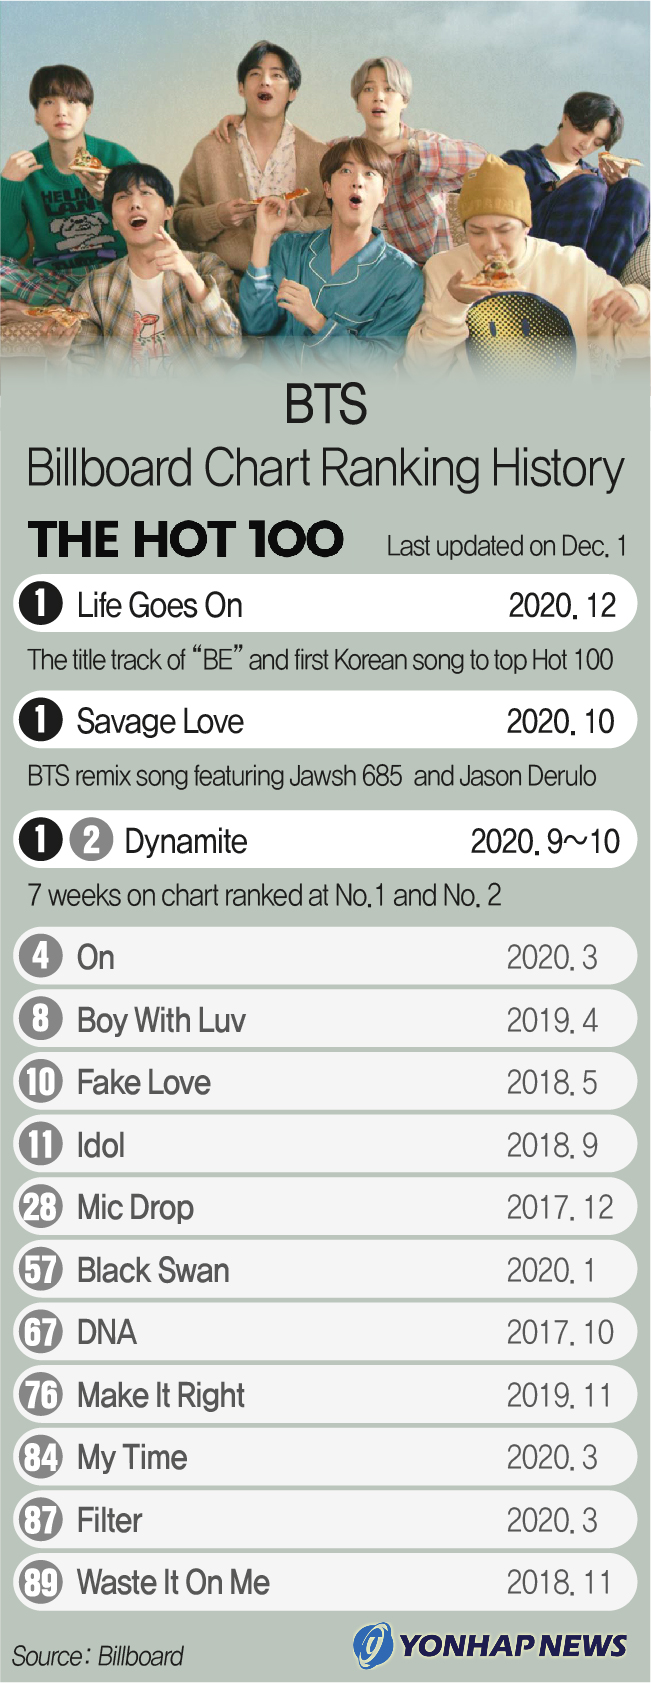 BTS Billboard Chart Ranking History